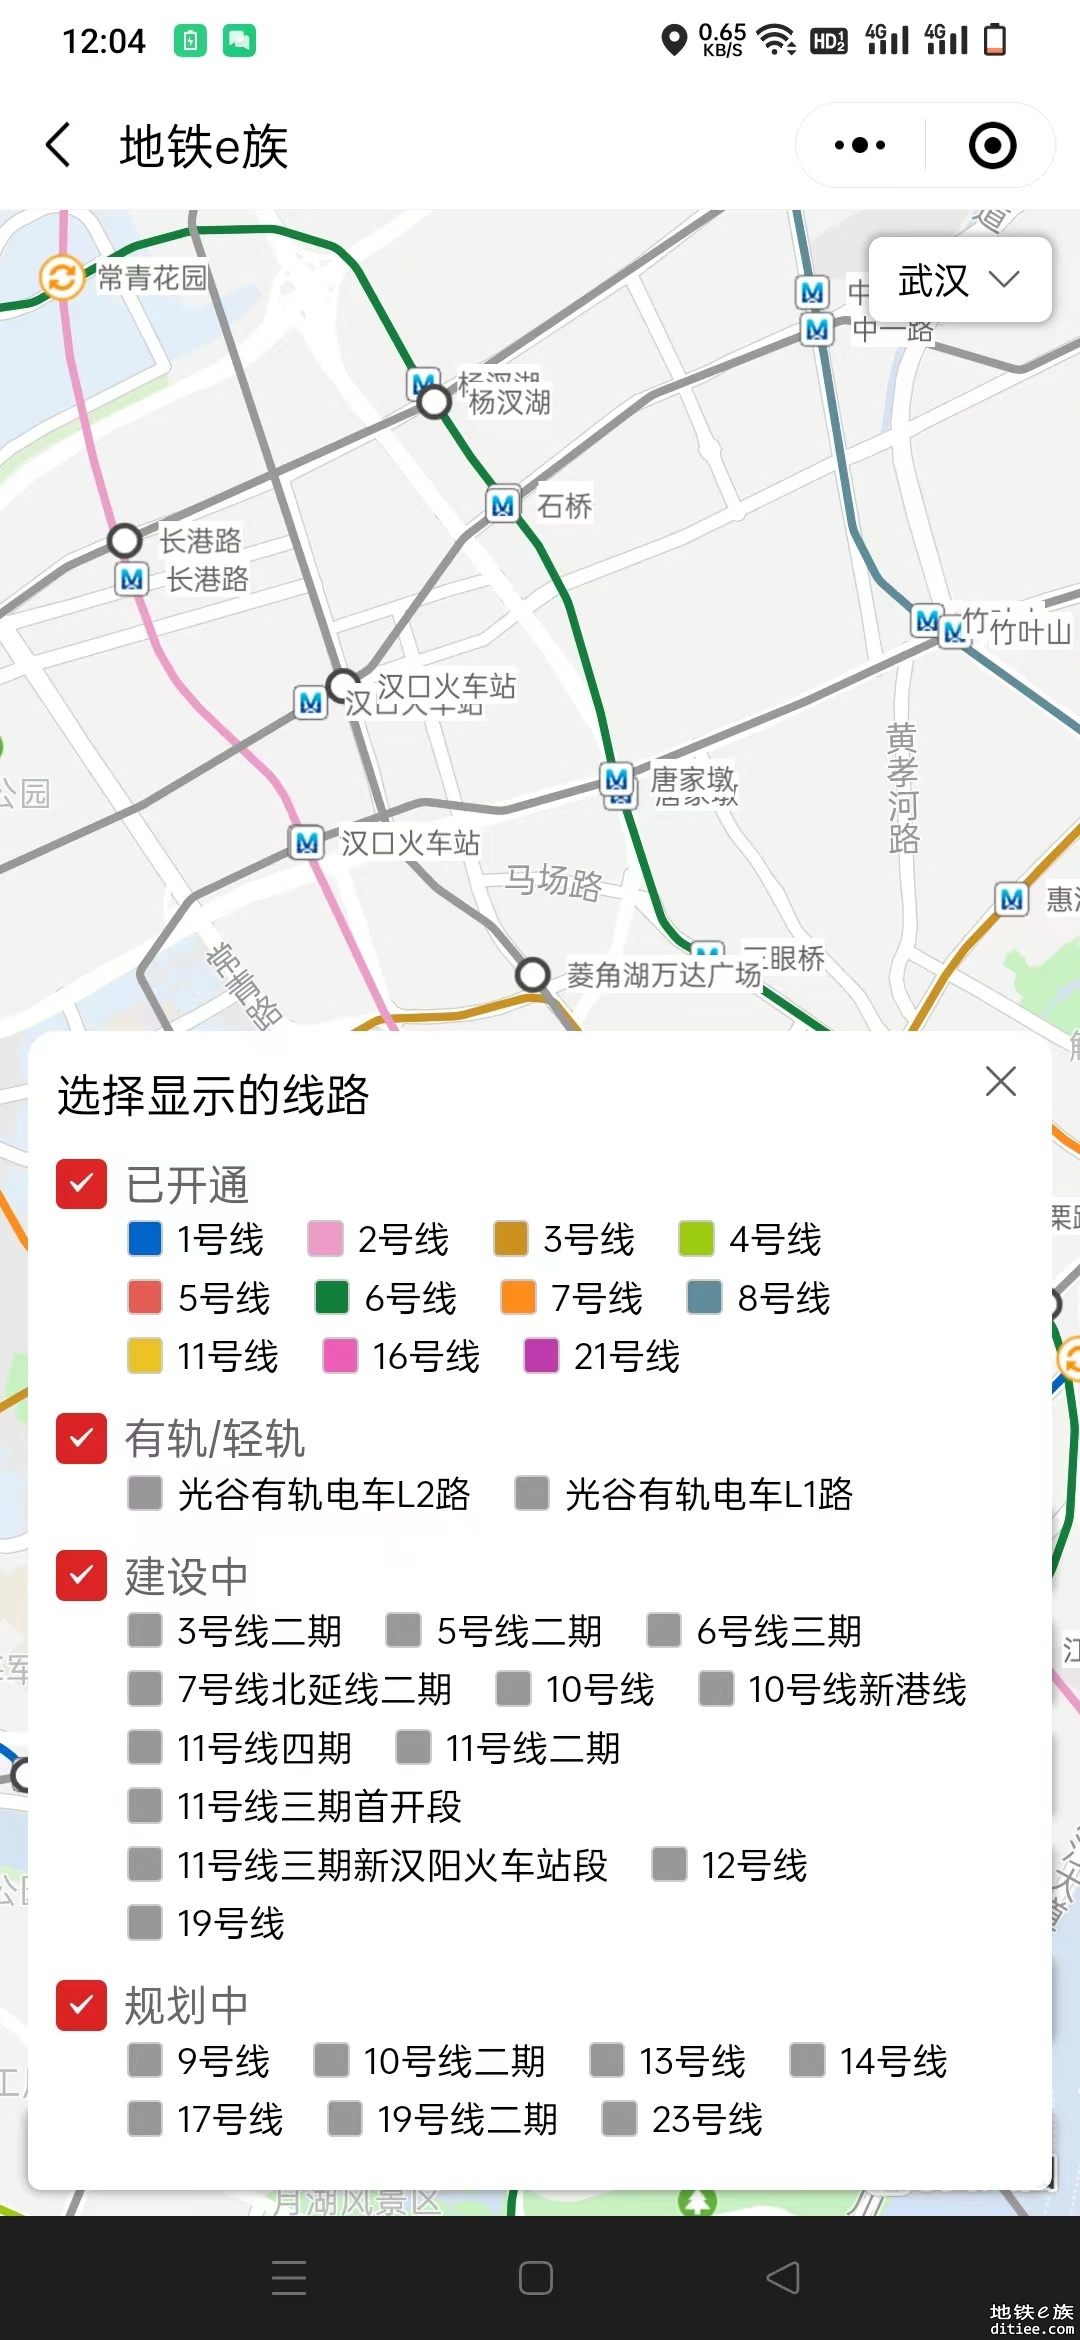 欢迎体验武汉地铁线路图地图版